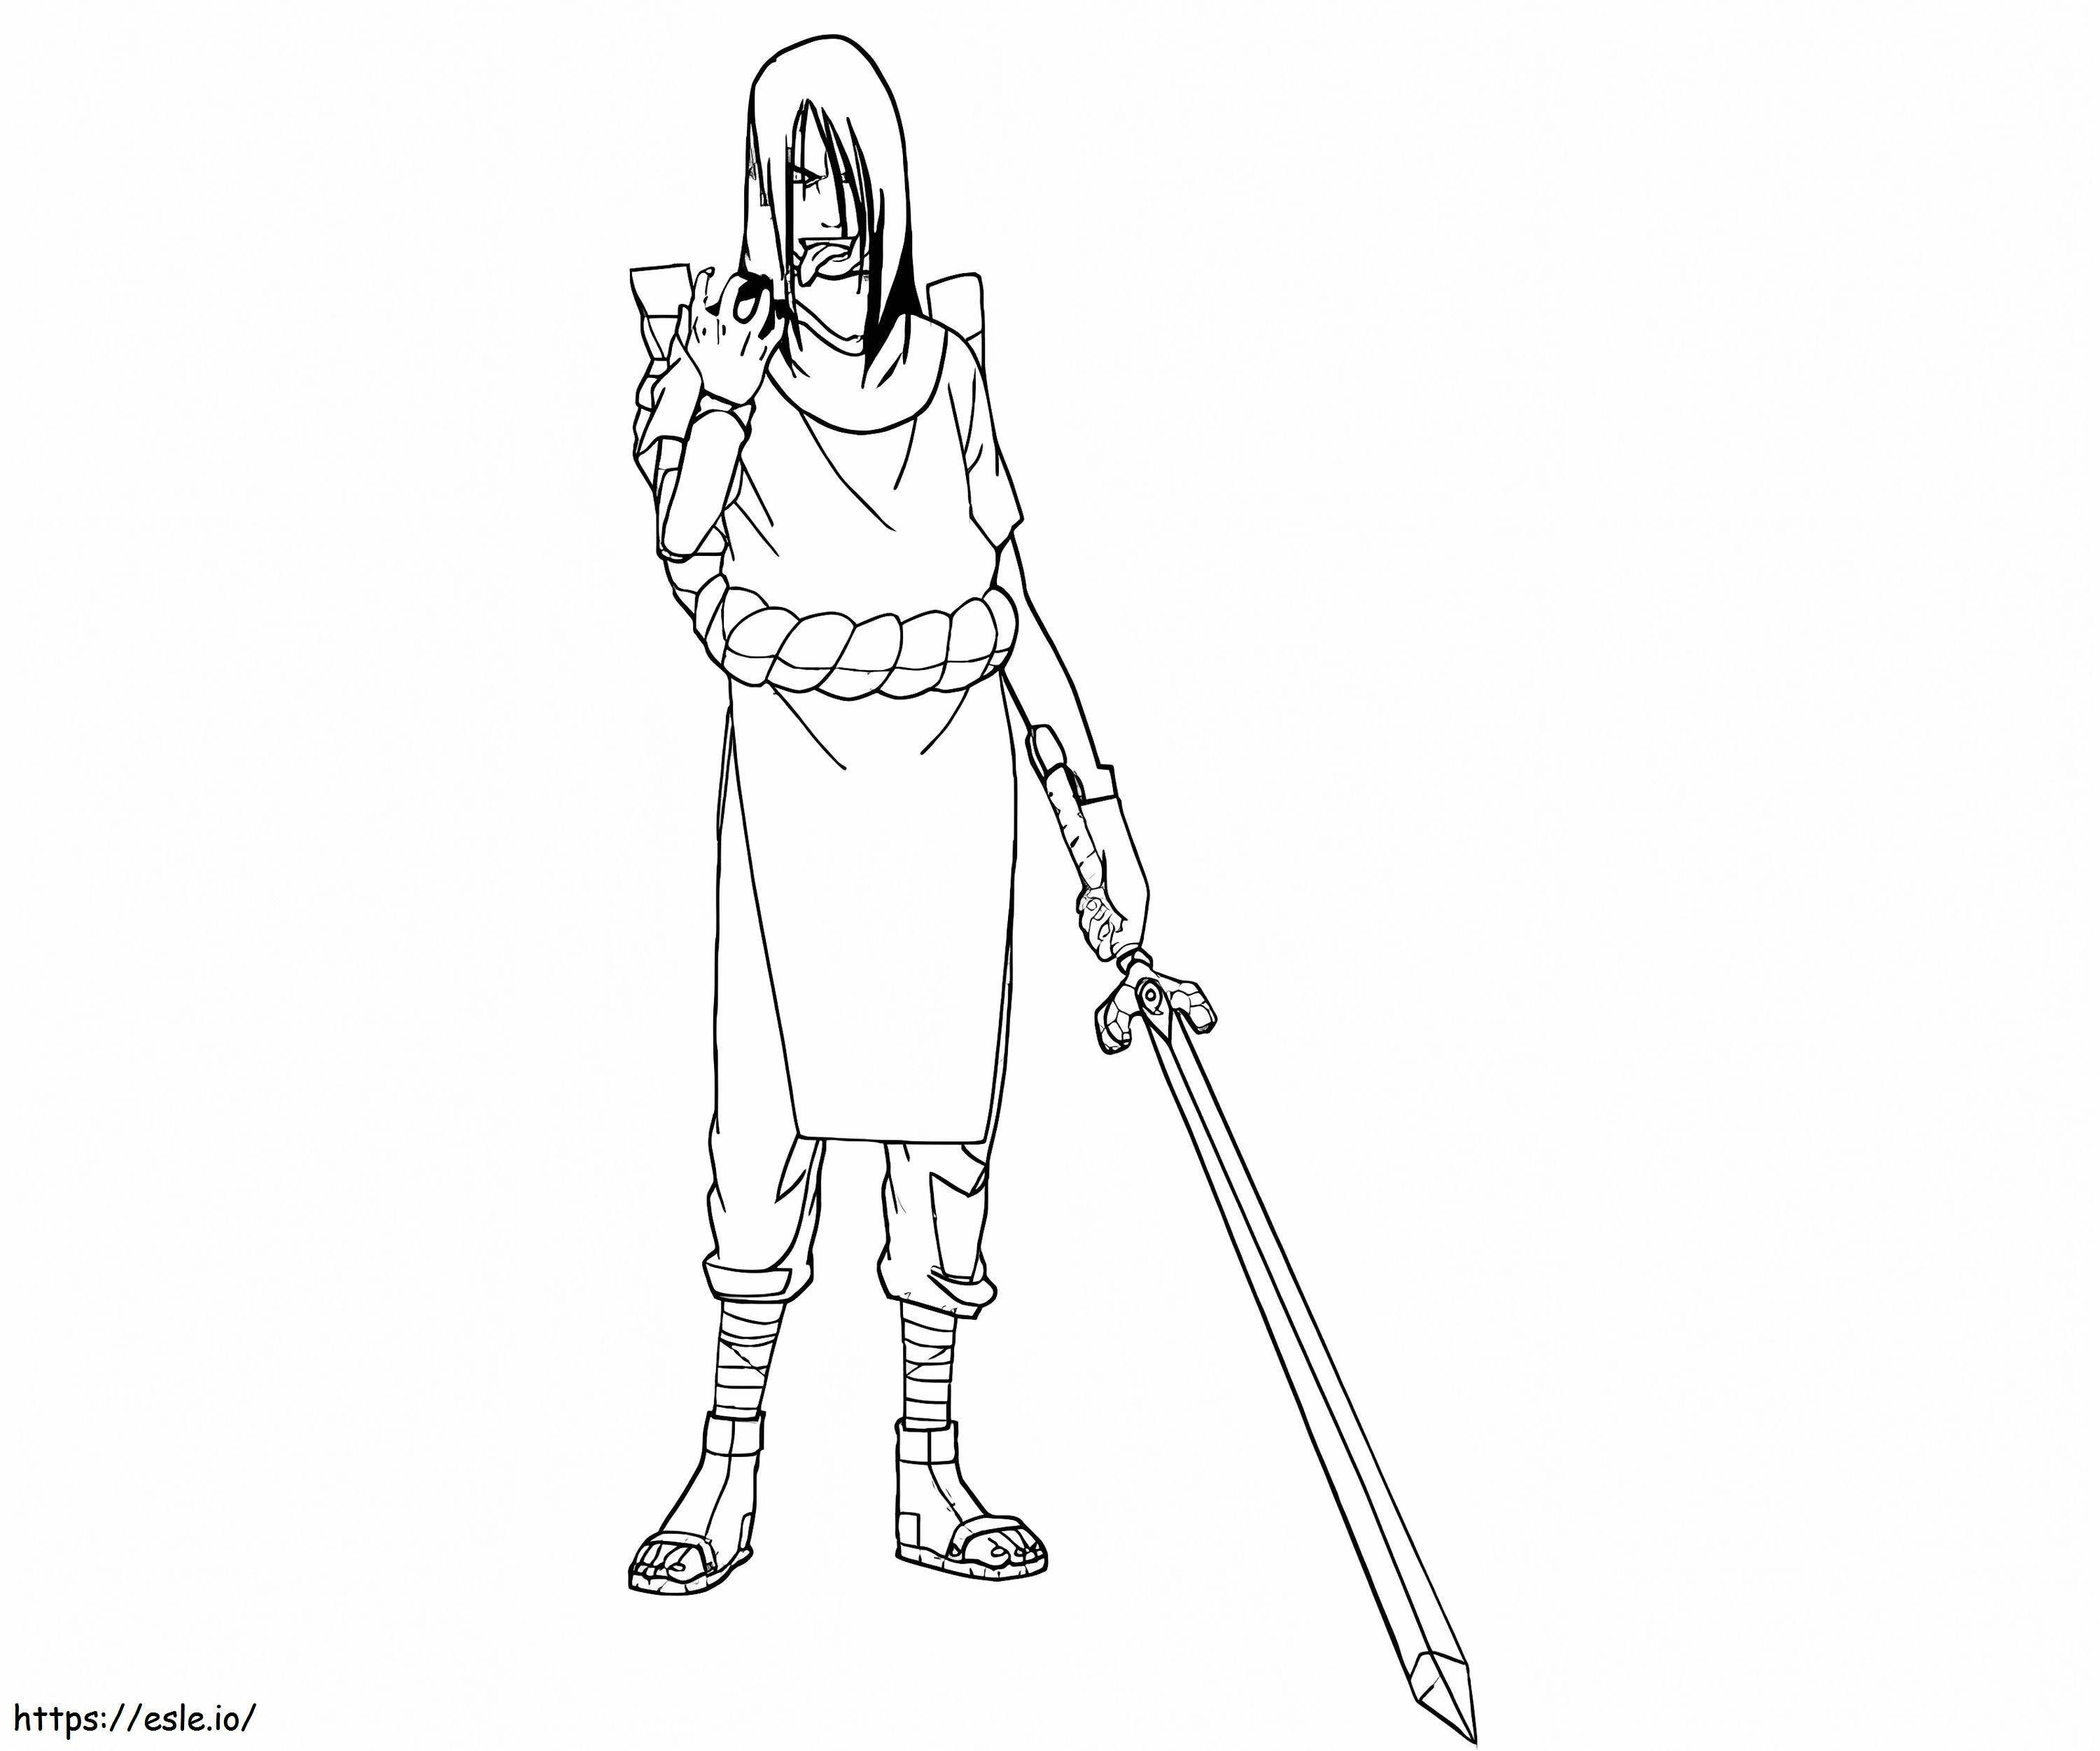 Orochimaru hält das Schwert ausmalbilder